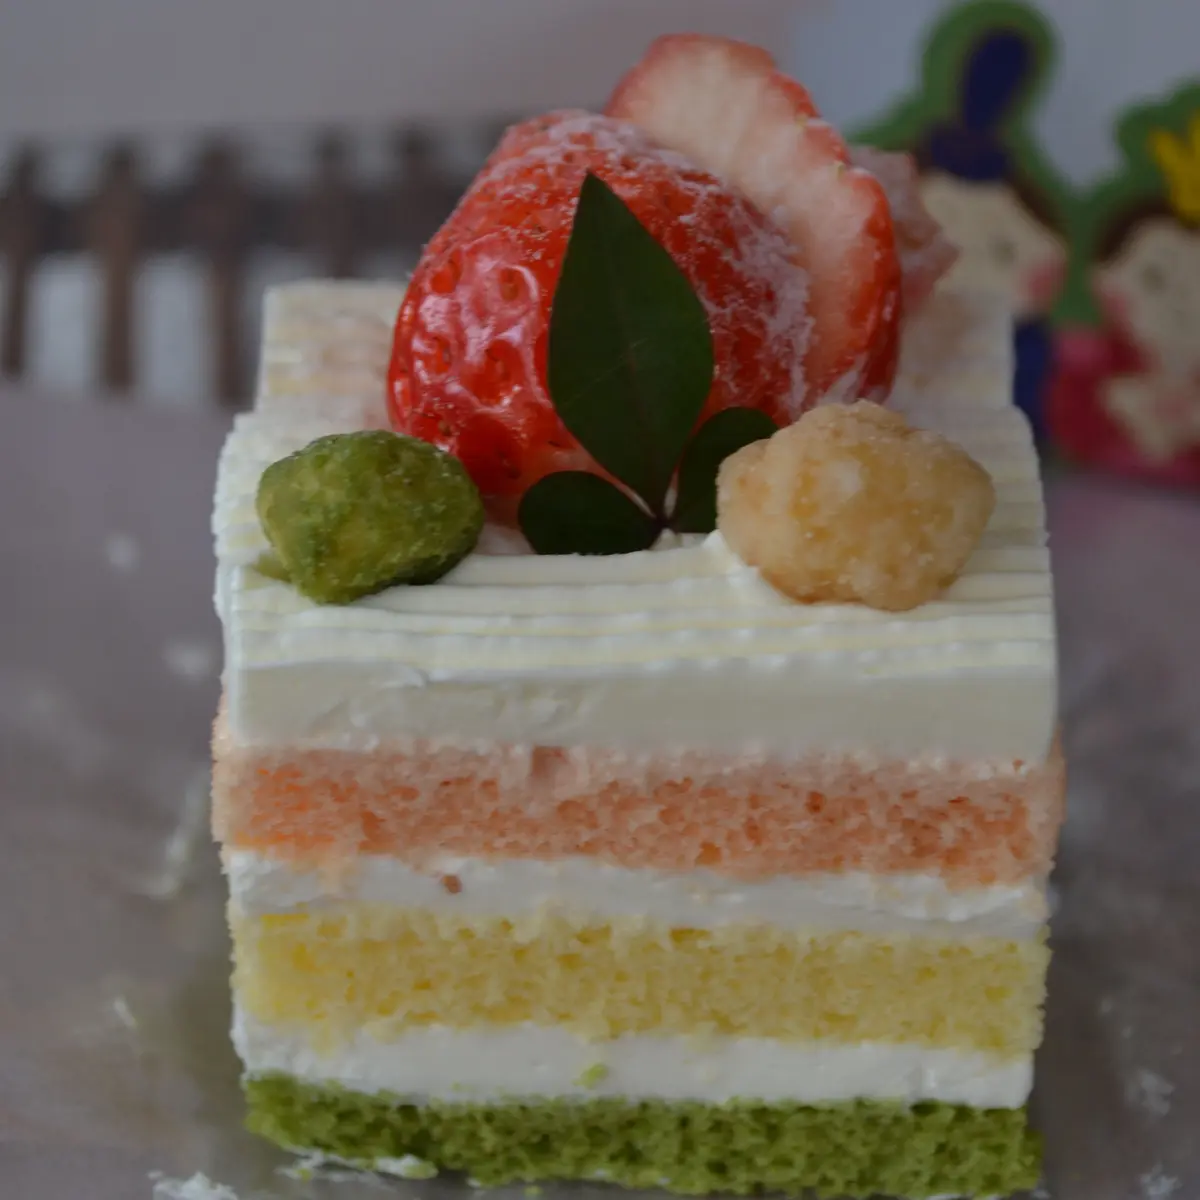 ひなまつりレシピ 3色スポンジのひなケーキ のレシピ 作り方 緒方 亜希野 料理教室検索サイト クスパ